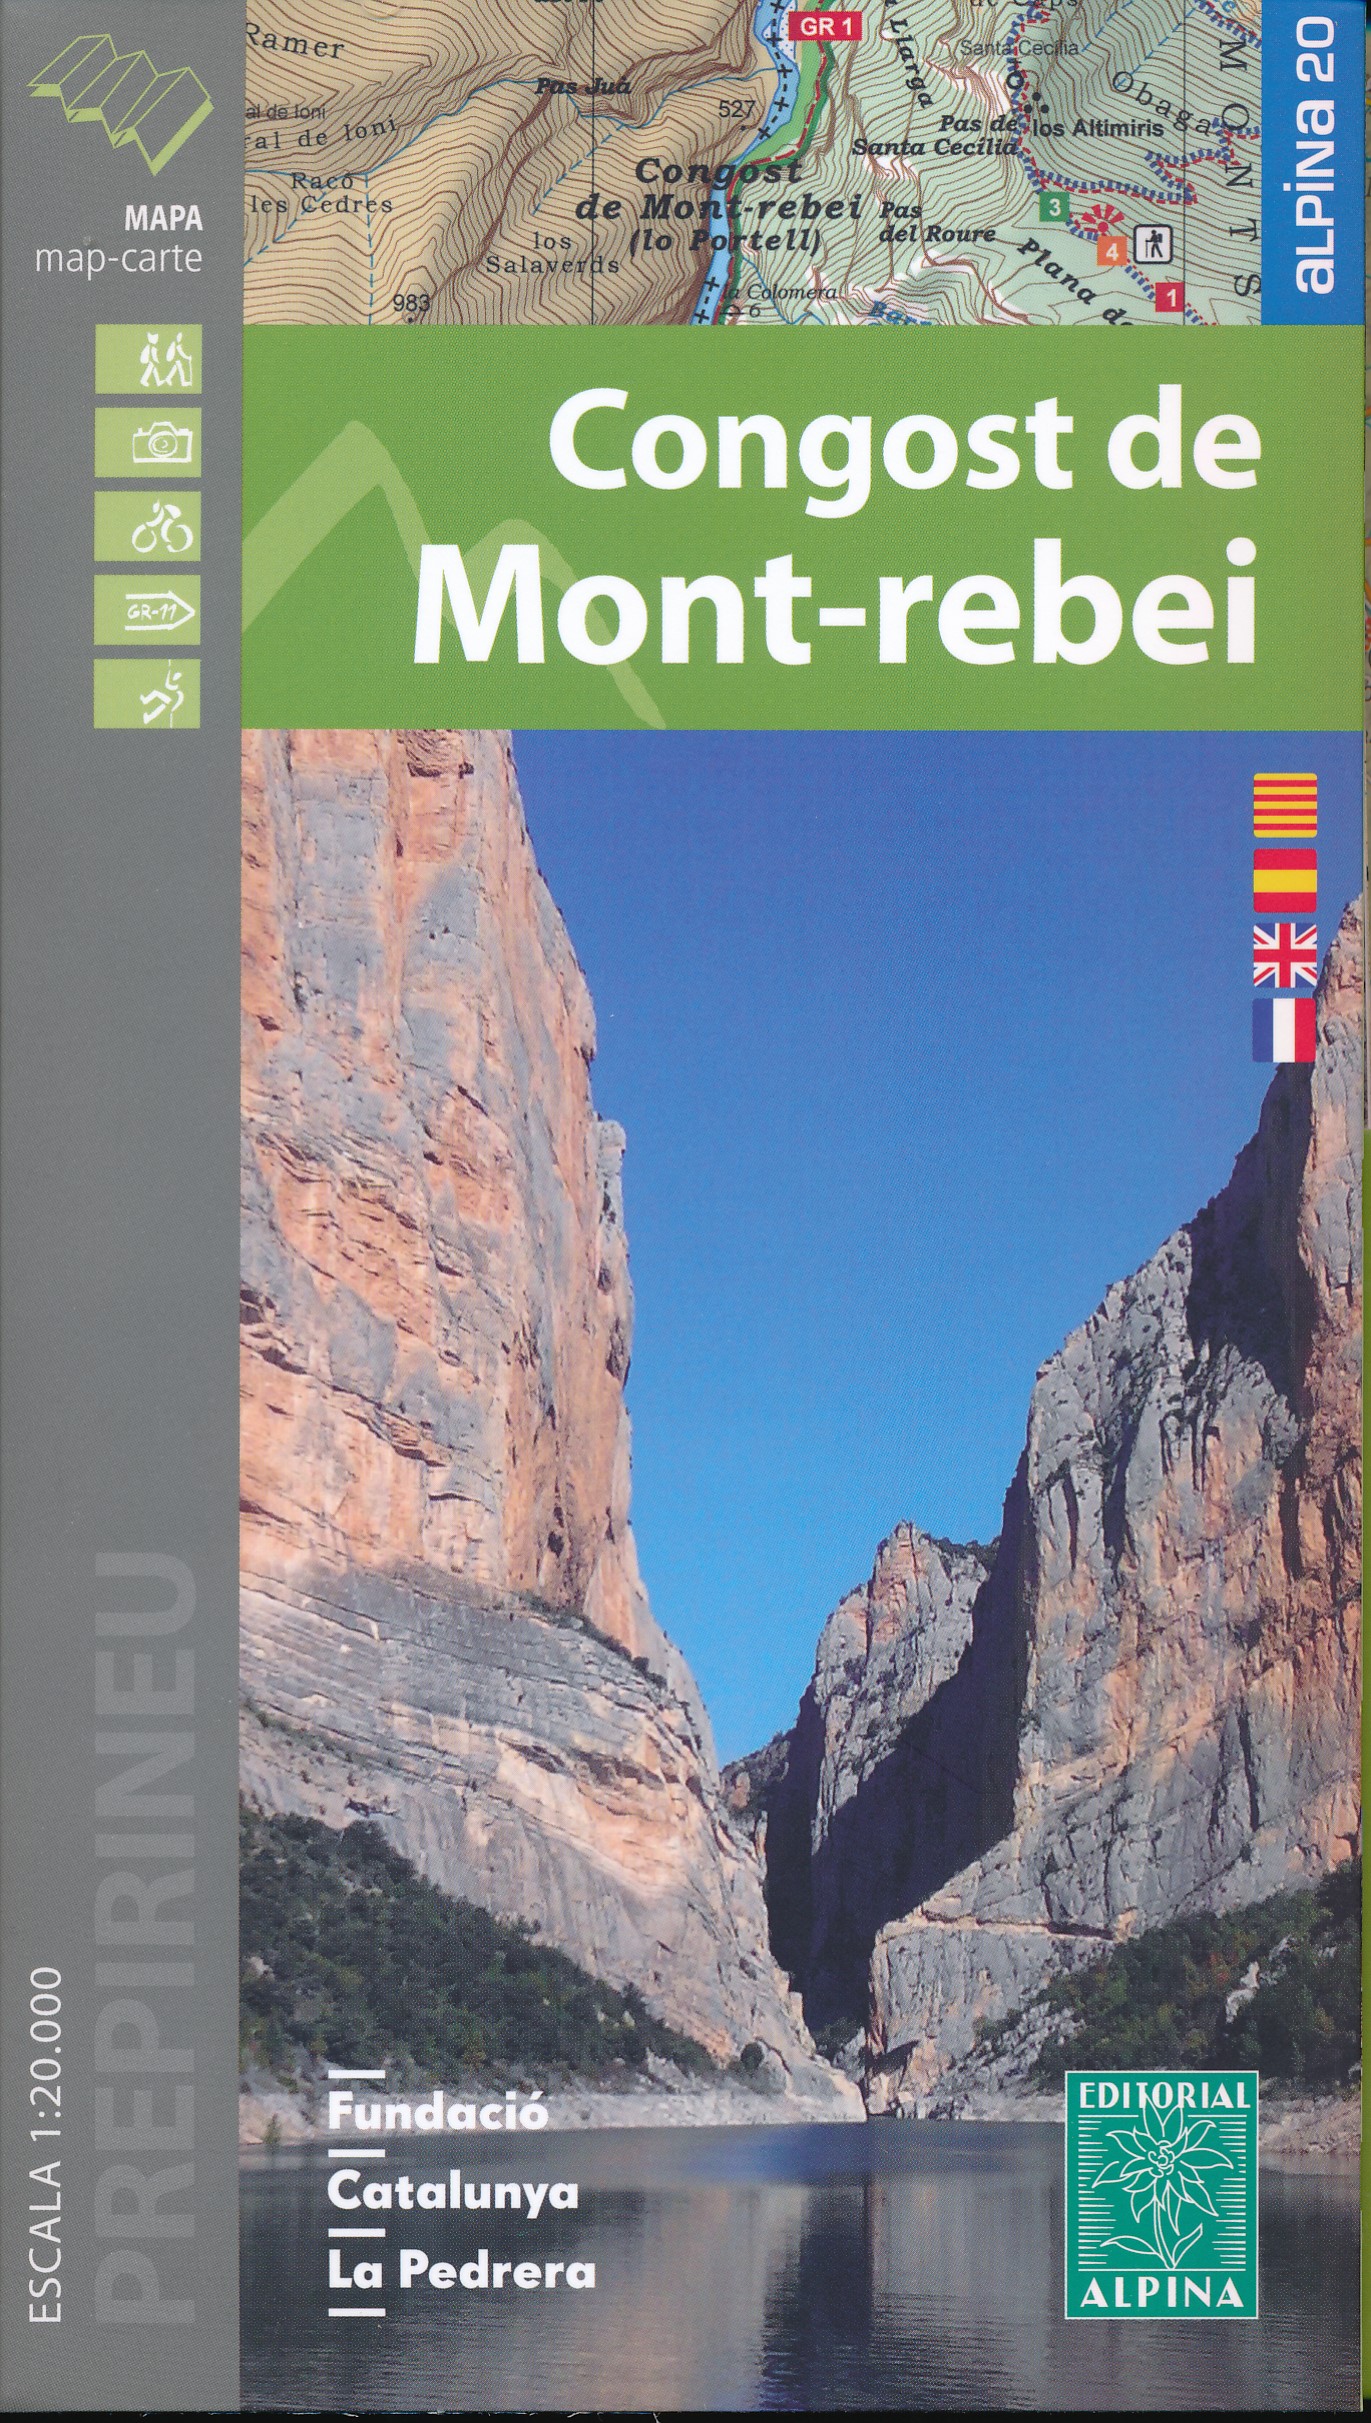 Online bestellen: Wandelkaart 33 Congost de Mont-rebei | Editorial Alpina